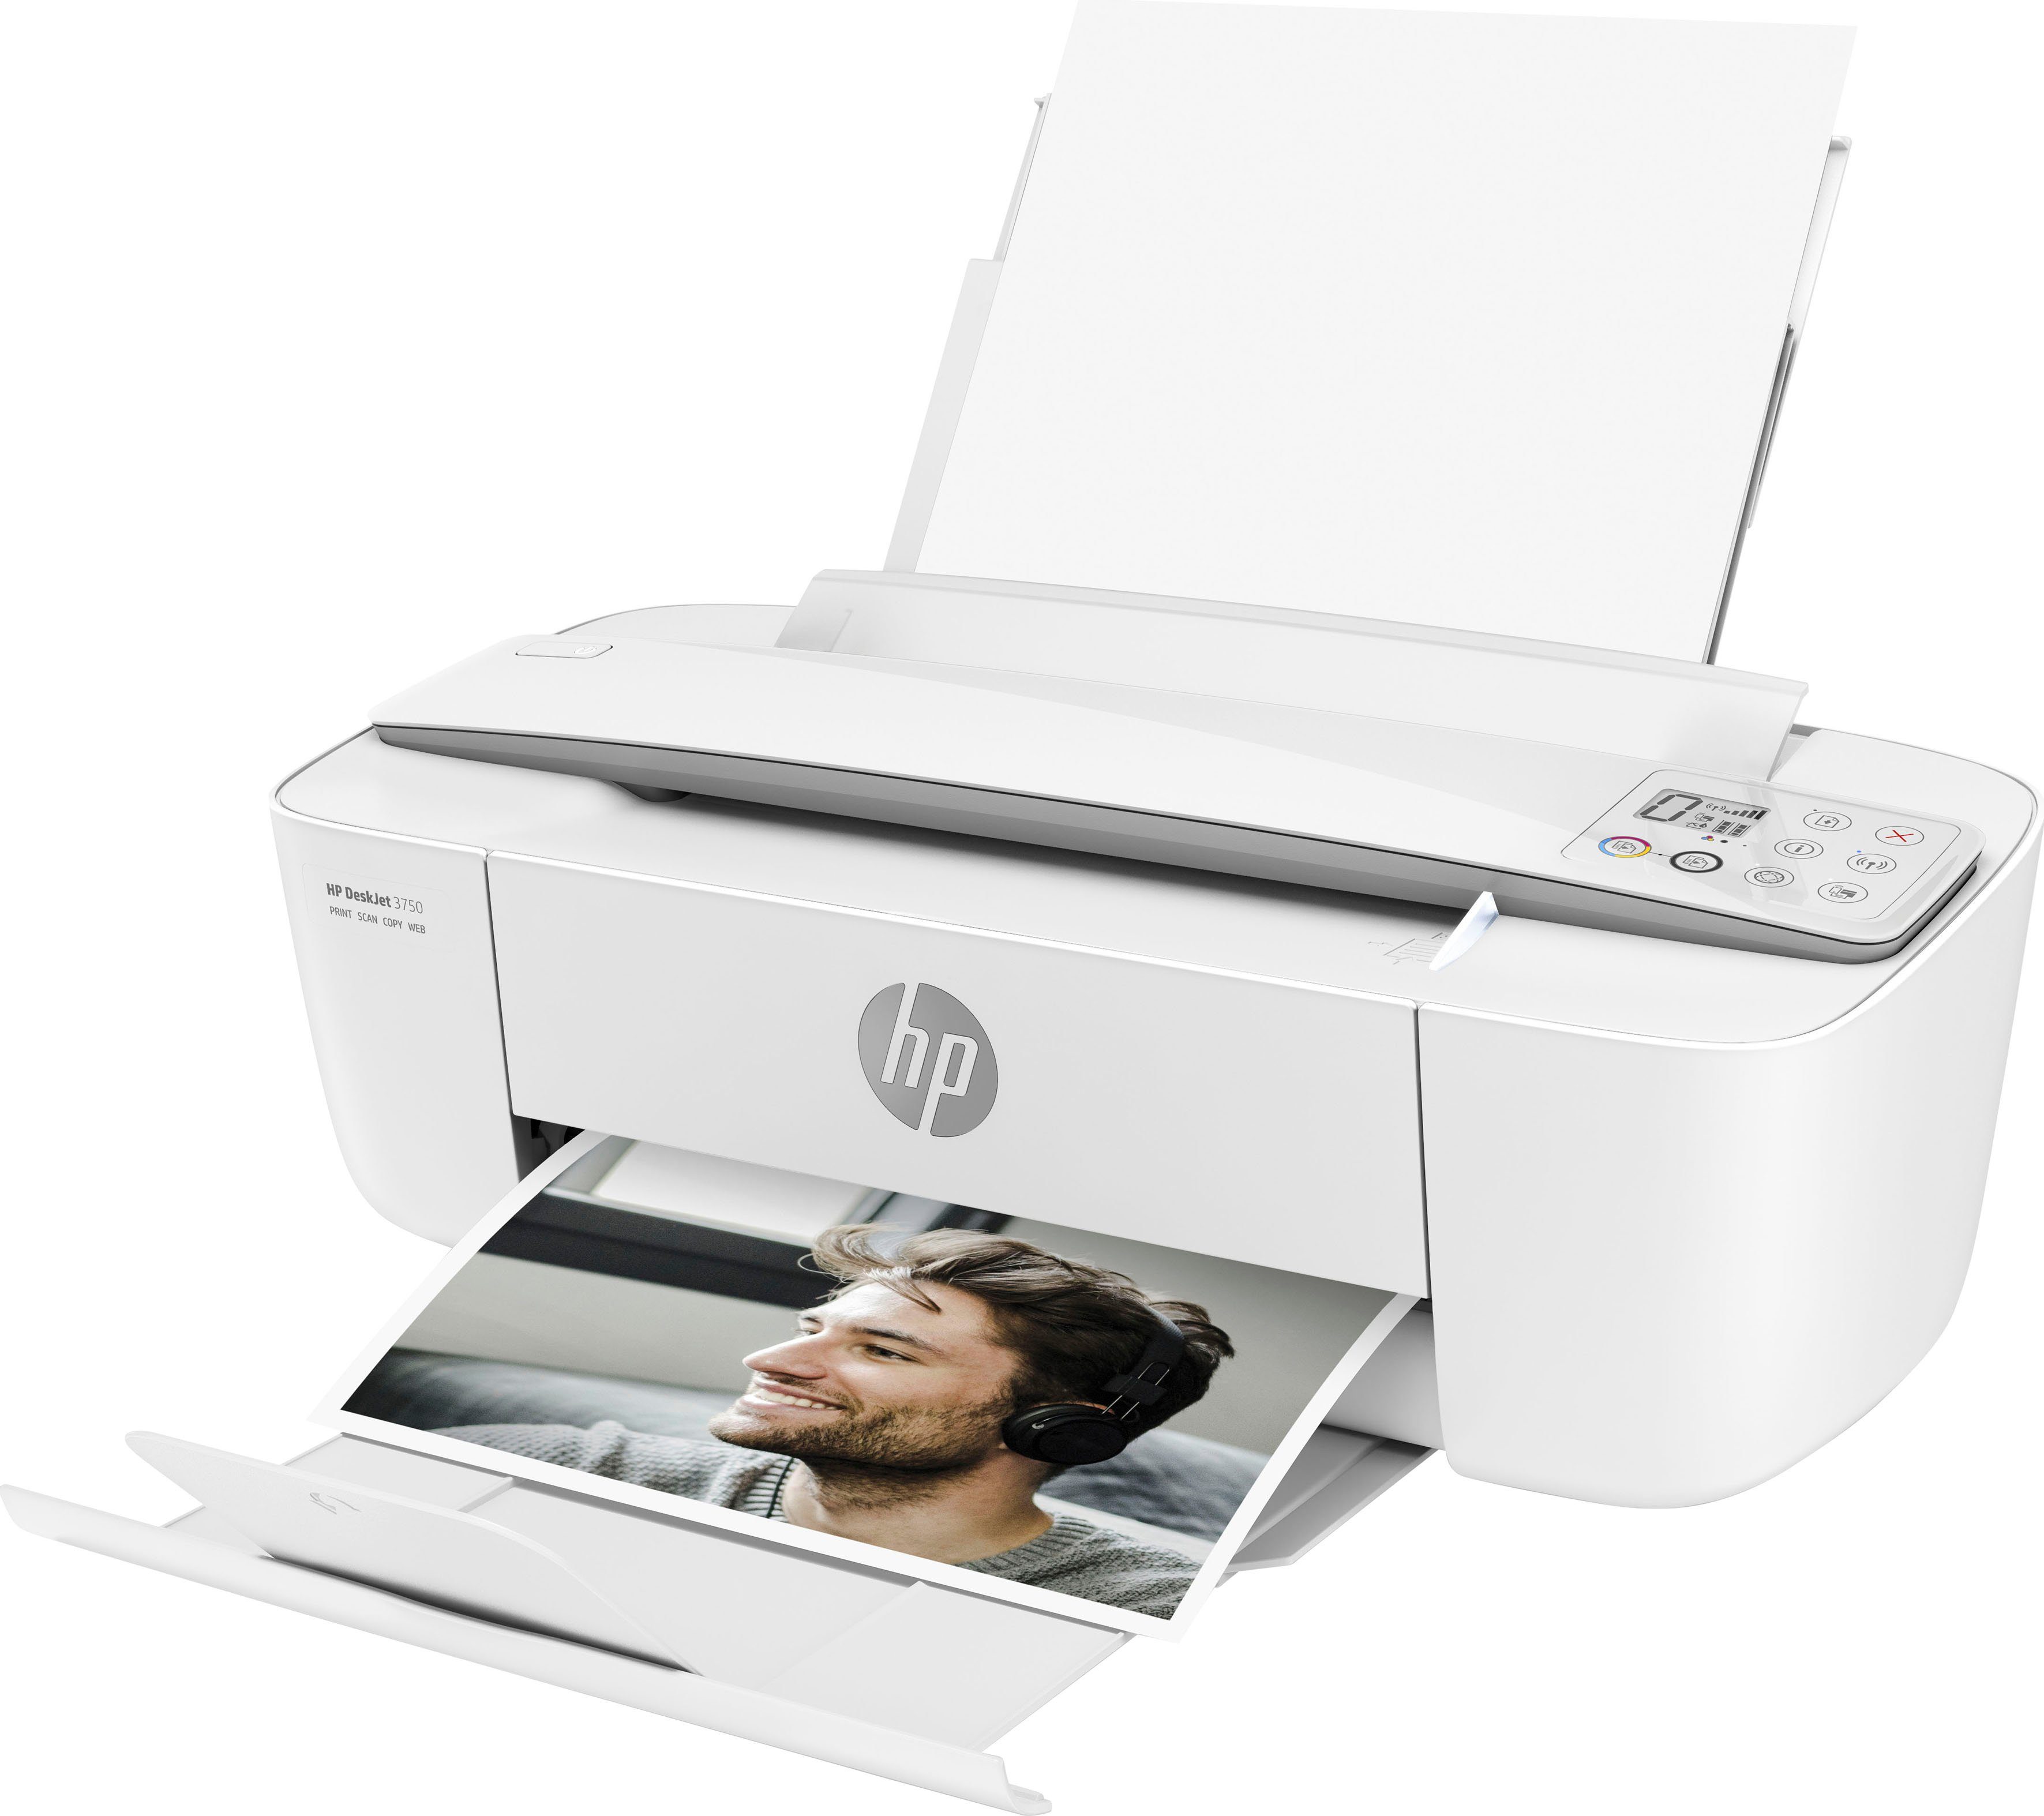 HP+ 3750 Instant (WLAN HP Multifunktionsdrucker, Drucker DeskJet kompatibel) Ink (Wi-Fi),